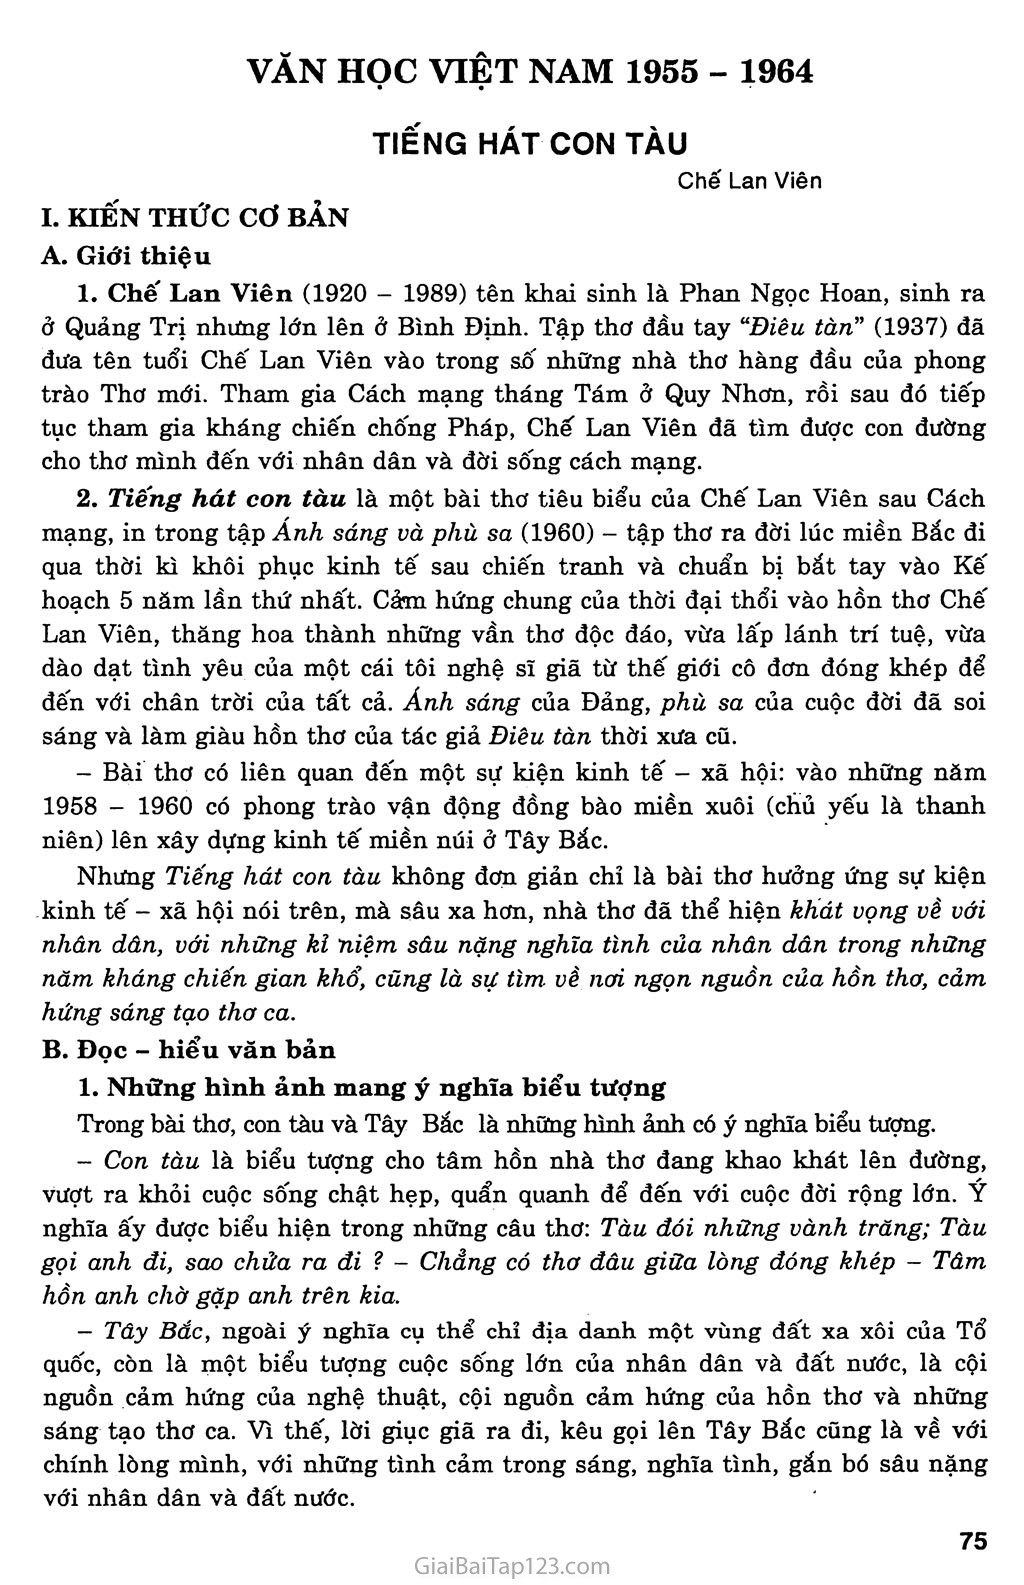 Tiếng hát con tàu (Chế Lan Viên, 1959) trang 1